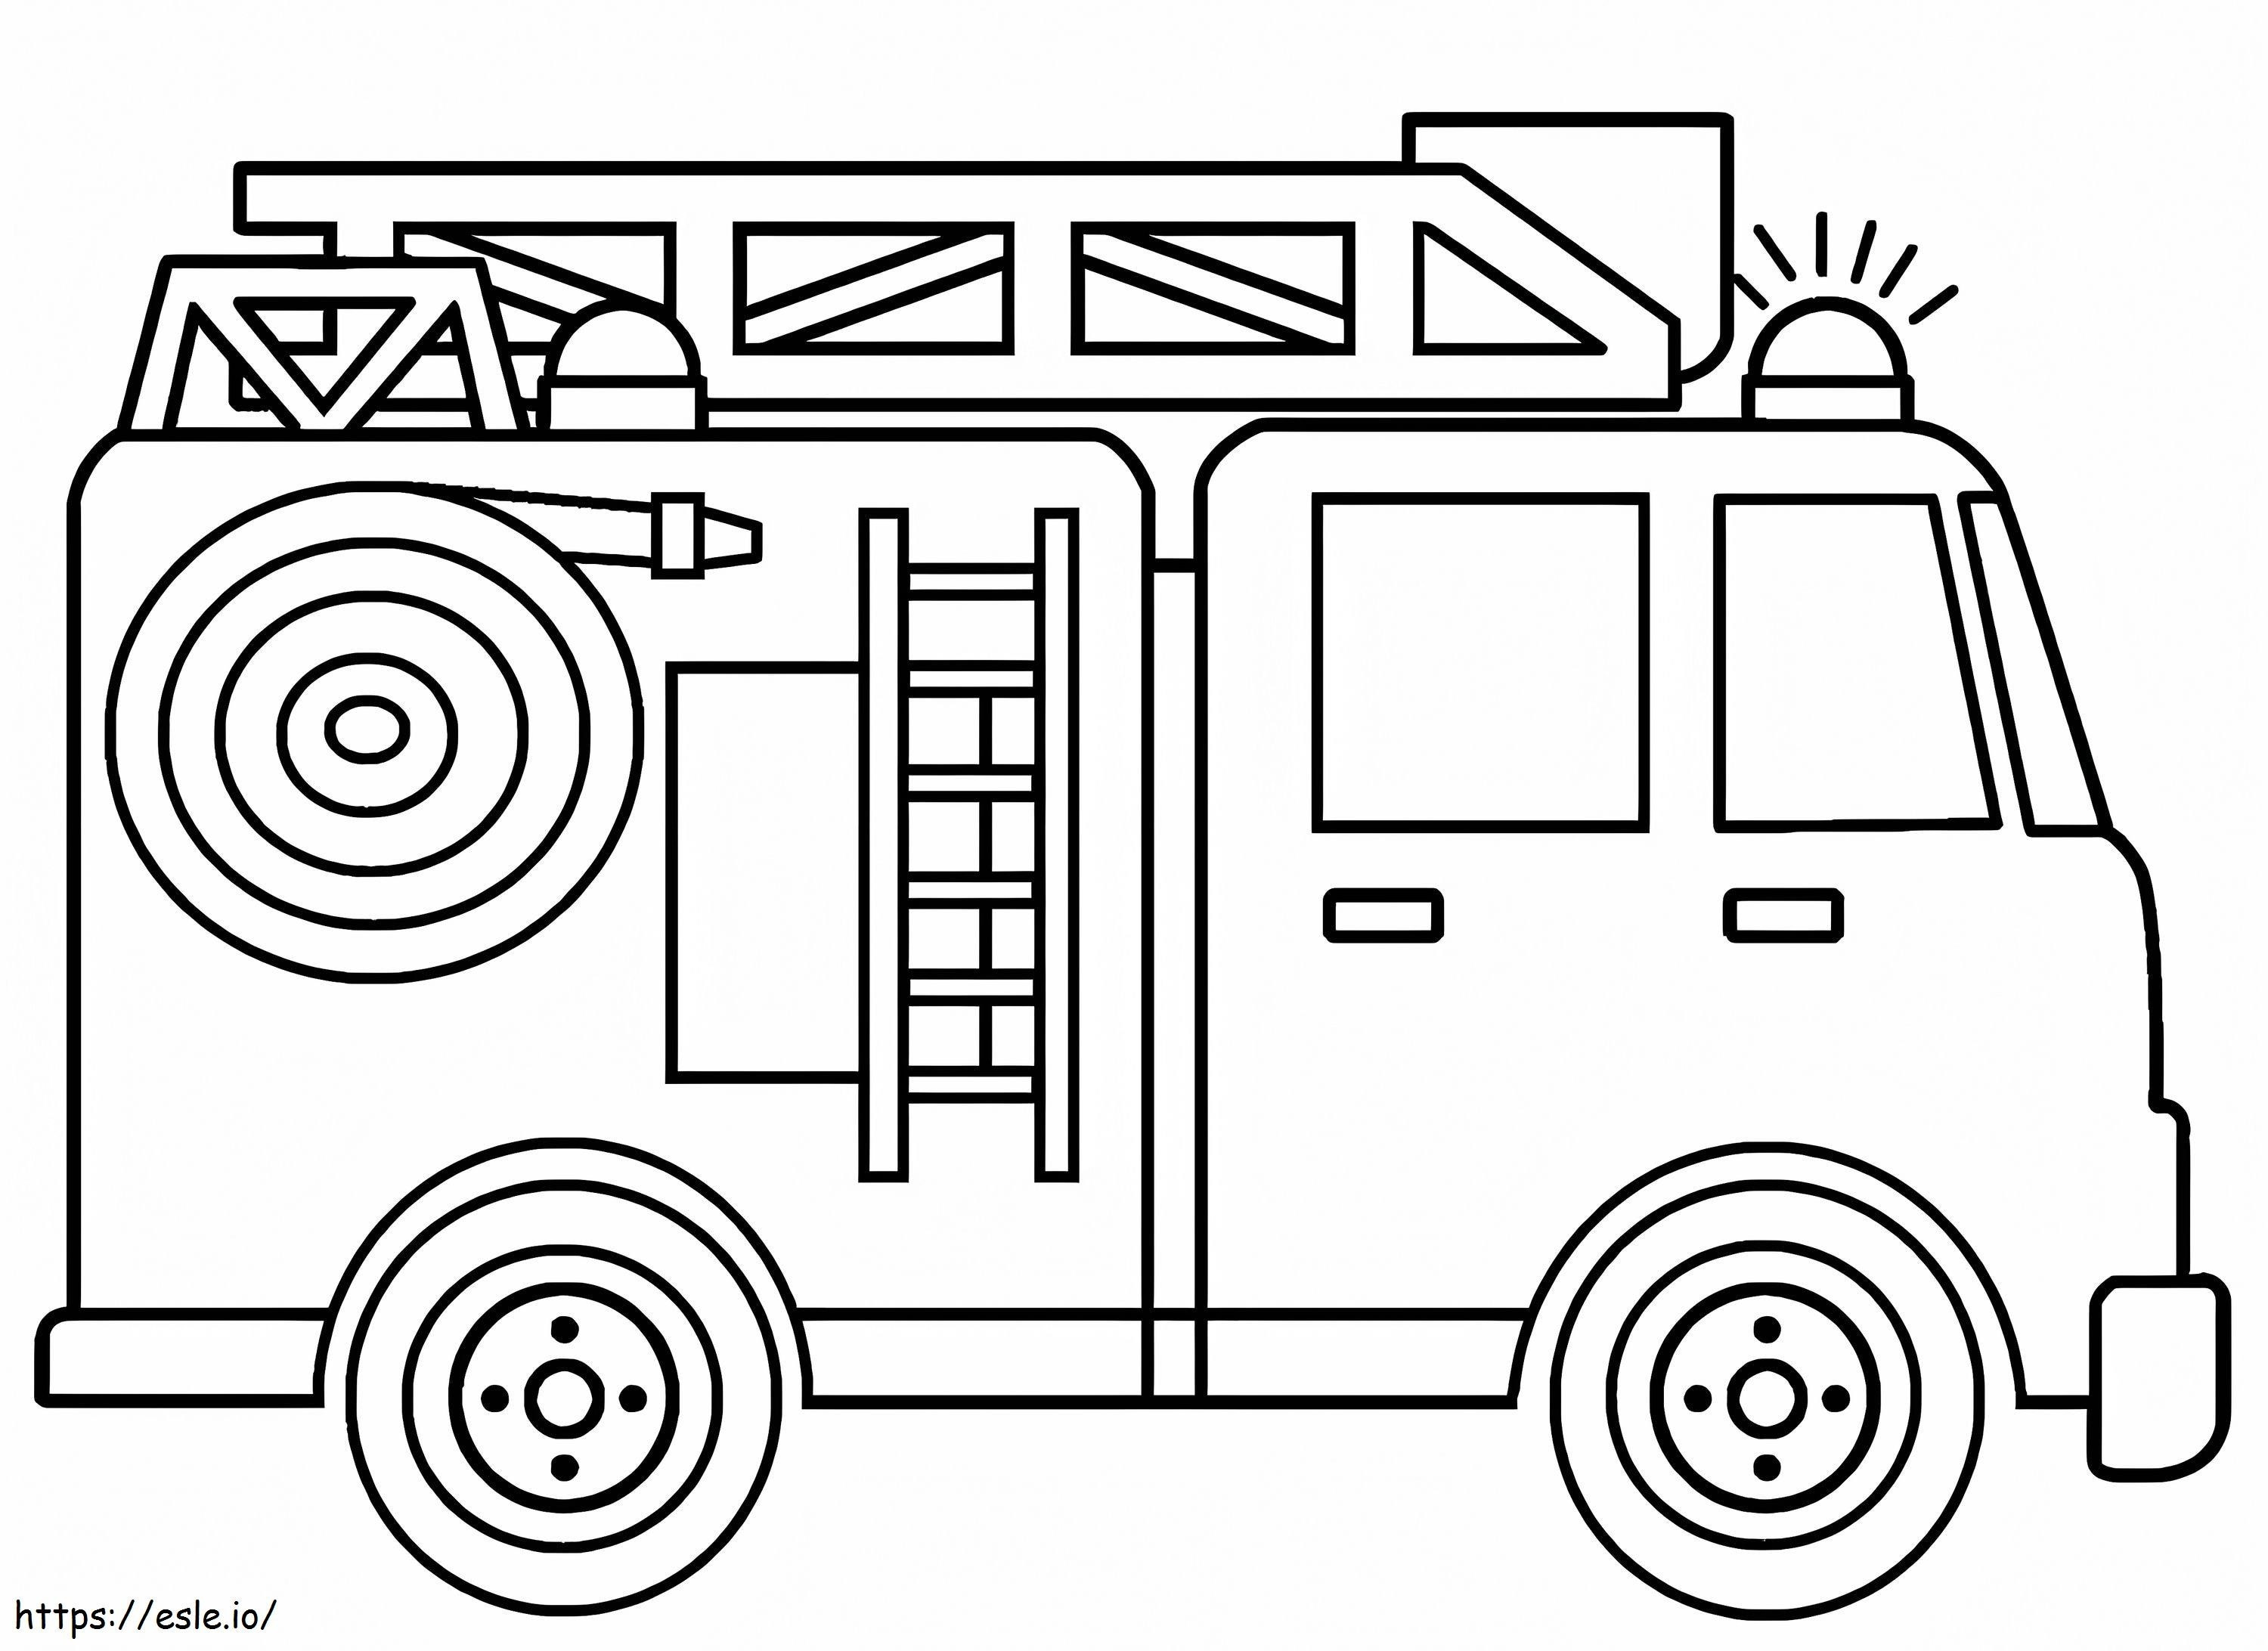 Einfaches Feuerwehrauto 5 ausmalbilder